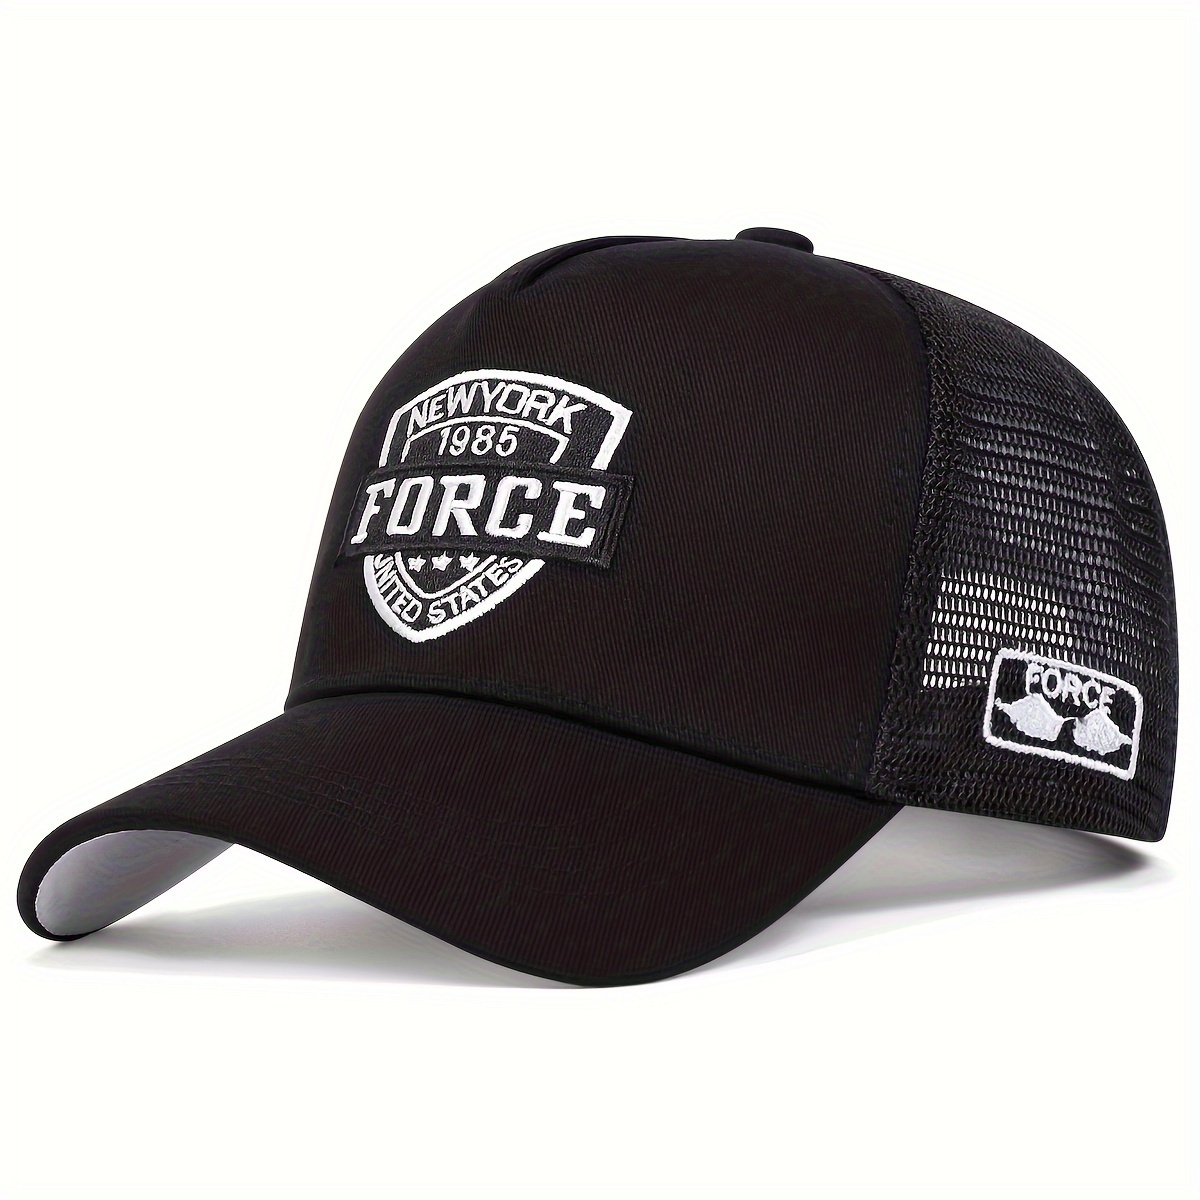 

New York Force 1985 Baseball Cap Mesh Breathable Unisex Trucker Hat Lightweight Adjustable Sun Hats For Women & Men